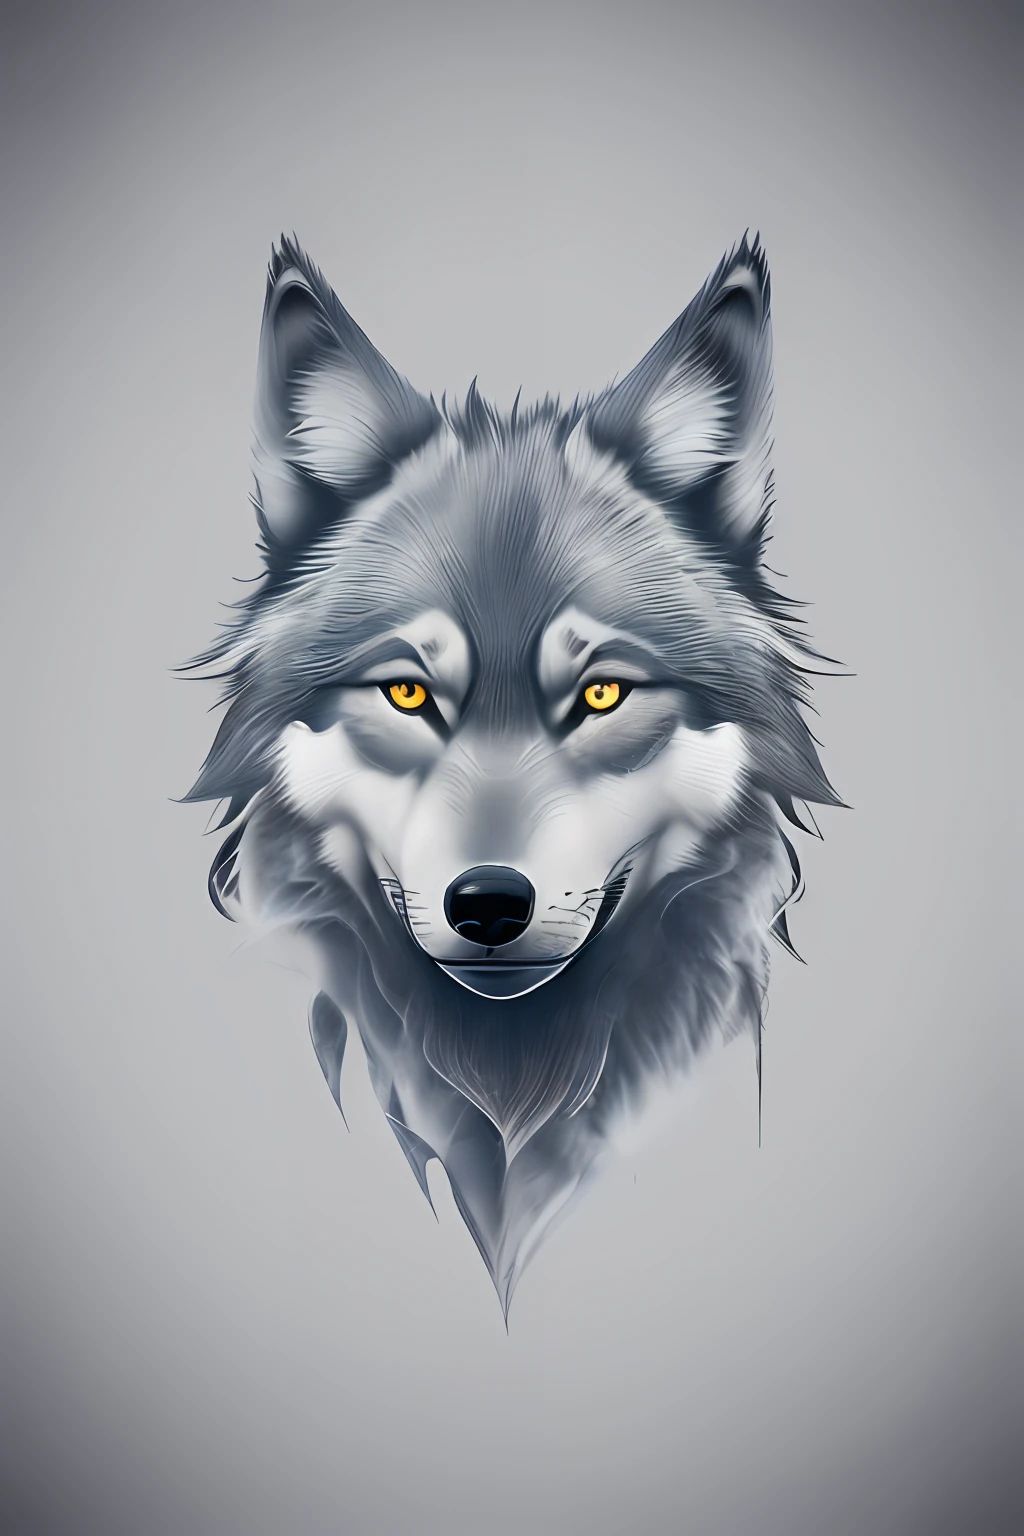 창의적인 로고 디자인, 늑대 로고, 늑대 라인 아트 로고, 컬러 디자인, 미니멀하고 순수한 — 늑대